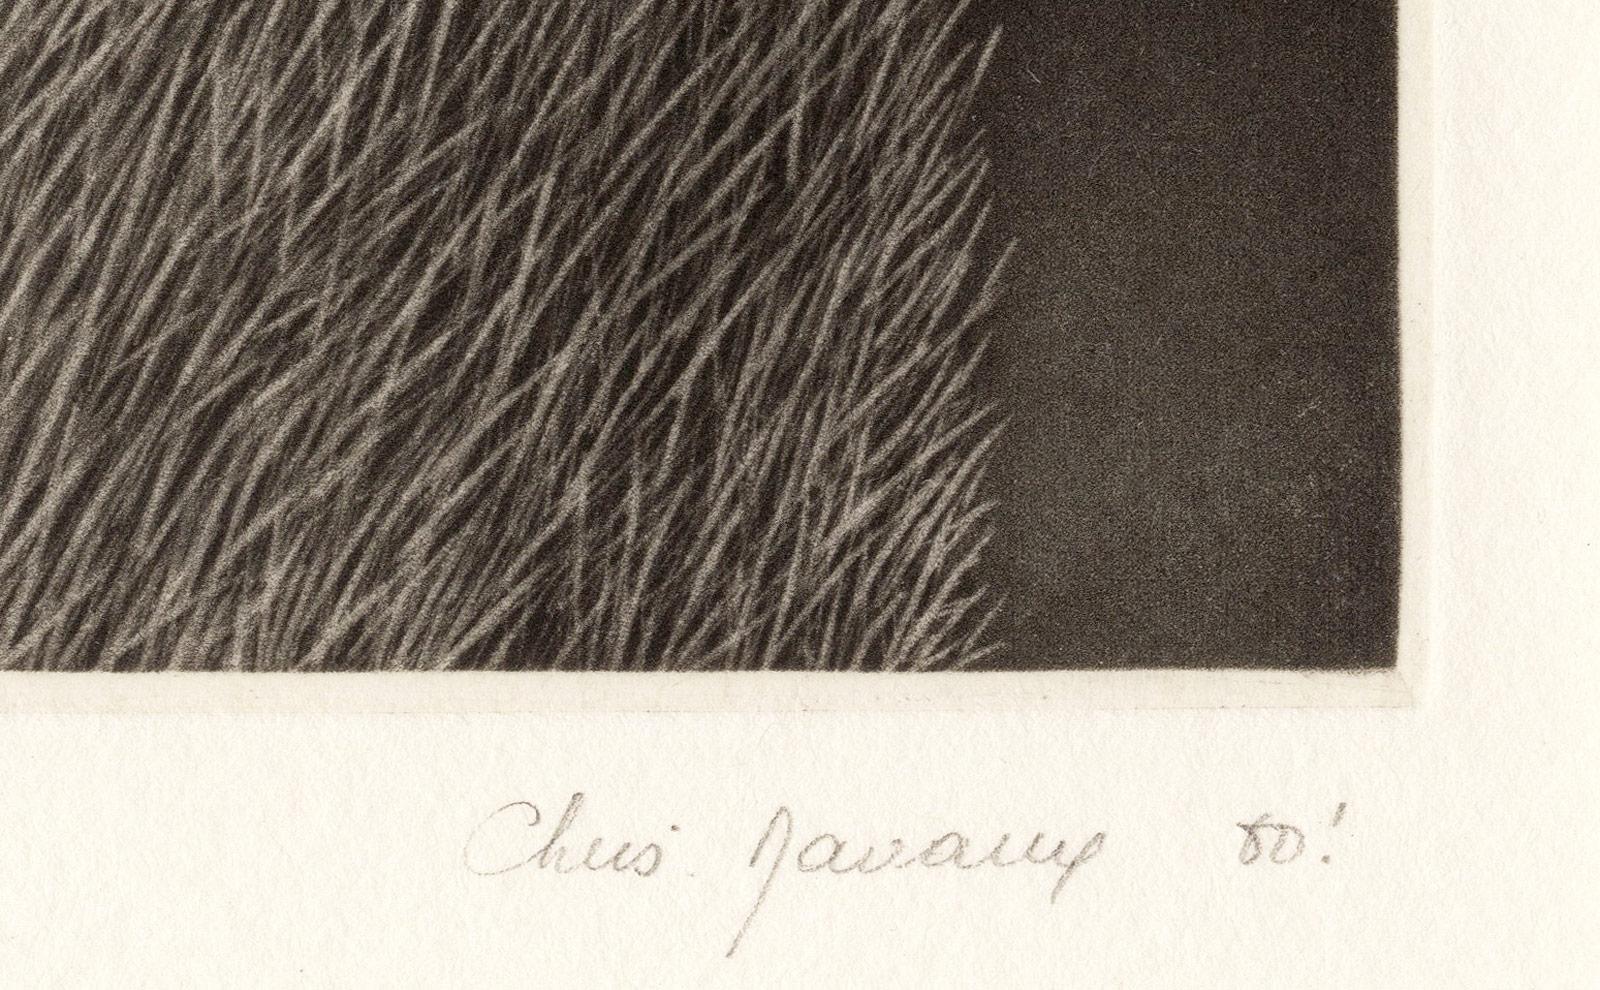 Christine Ravaux schuf Peau d' Are, das mit Bleistift signiert ist.  Dieser Eindruck ist #2 von 15

Schwarz- und Grautöne auf einem herabgefallenen Ast ergeben ein ansprechendes Muster im Kontrast zu den Gräsern und Farnen, die darunter liegen. 